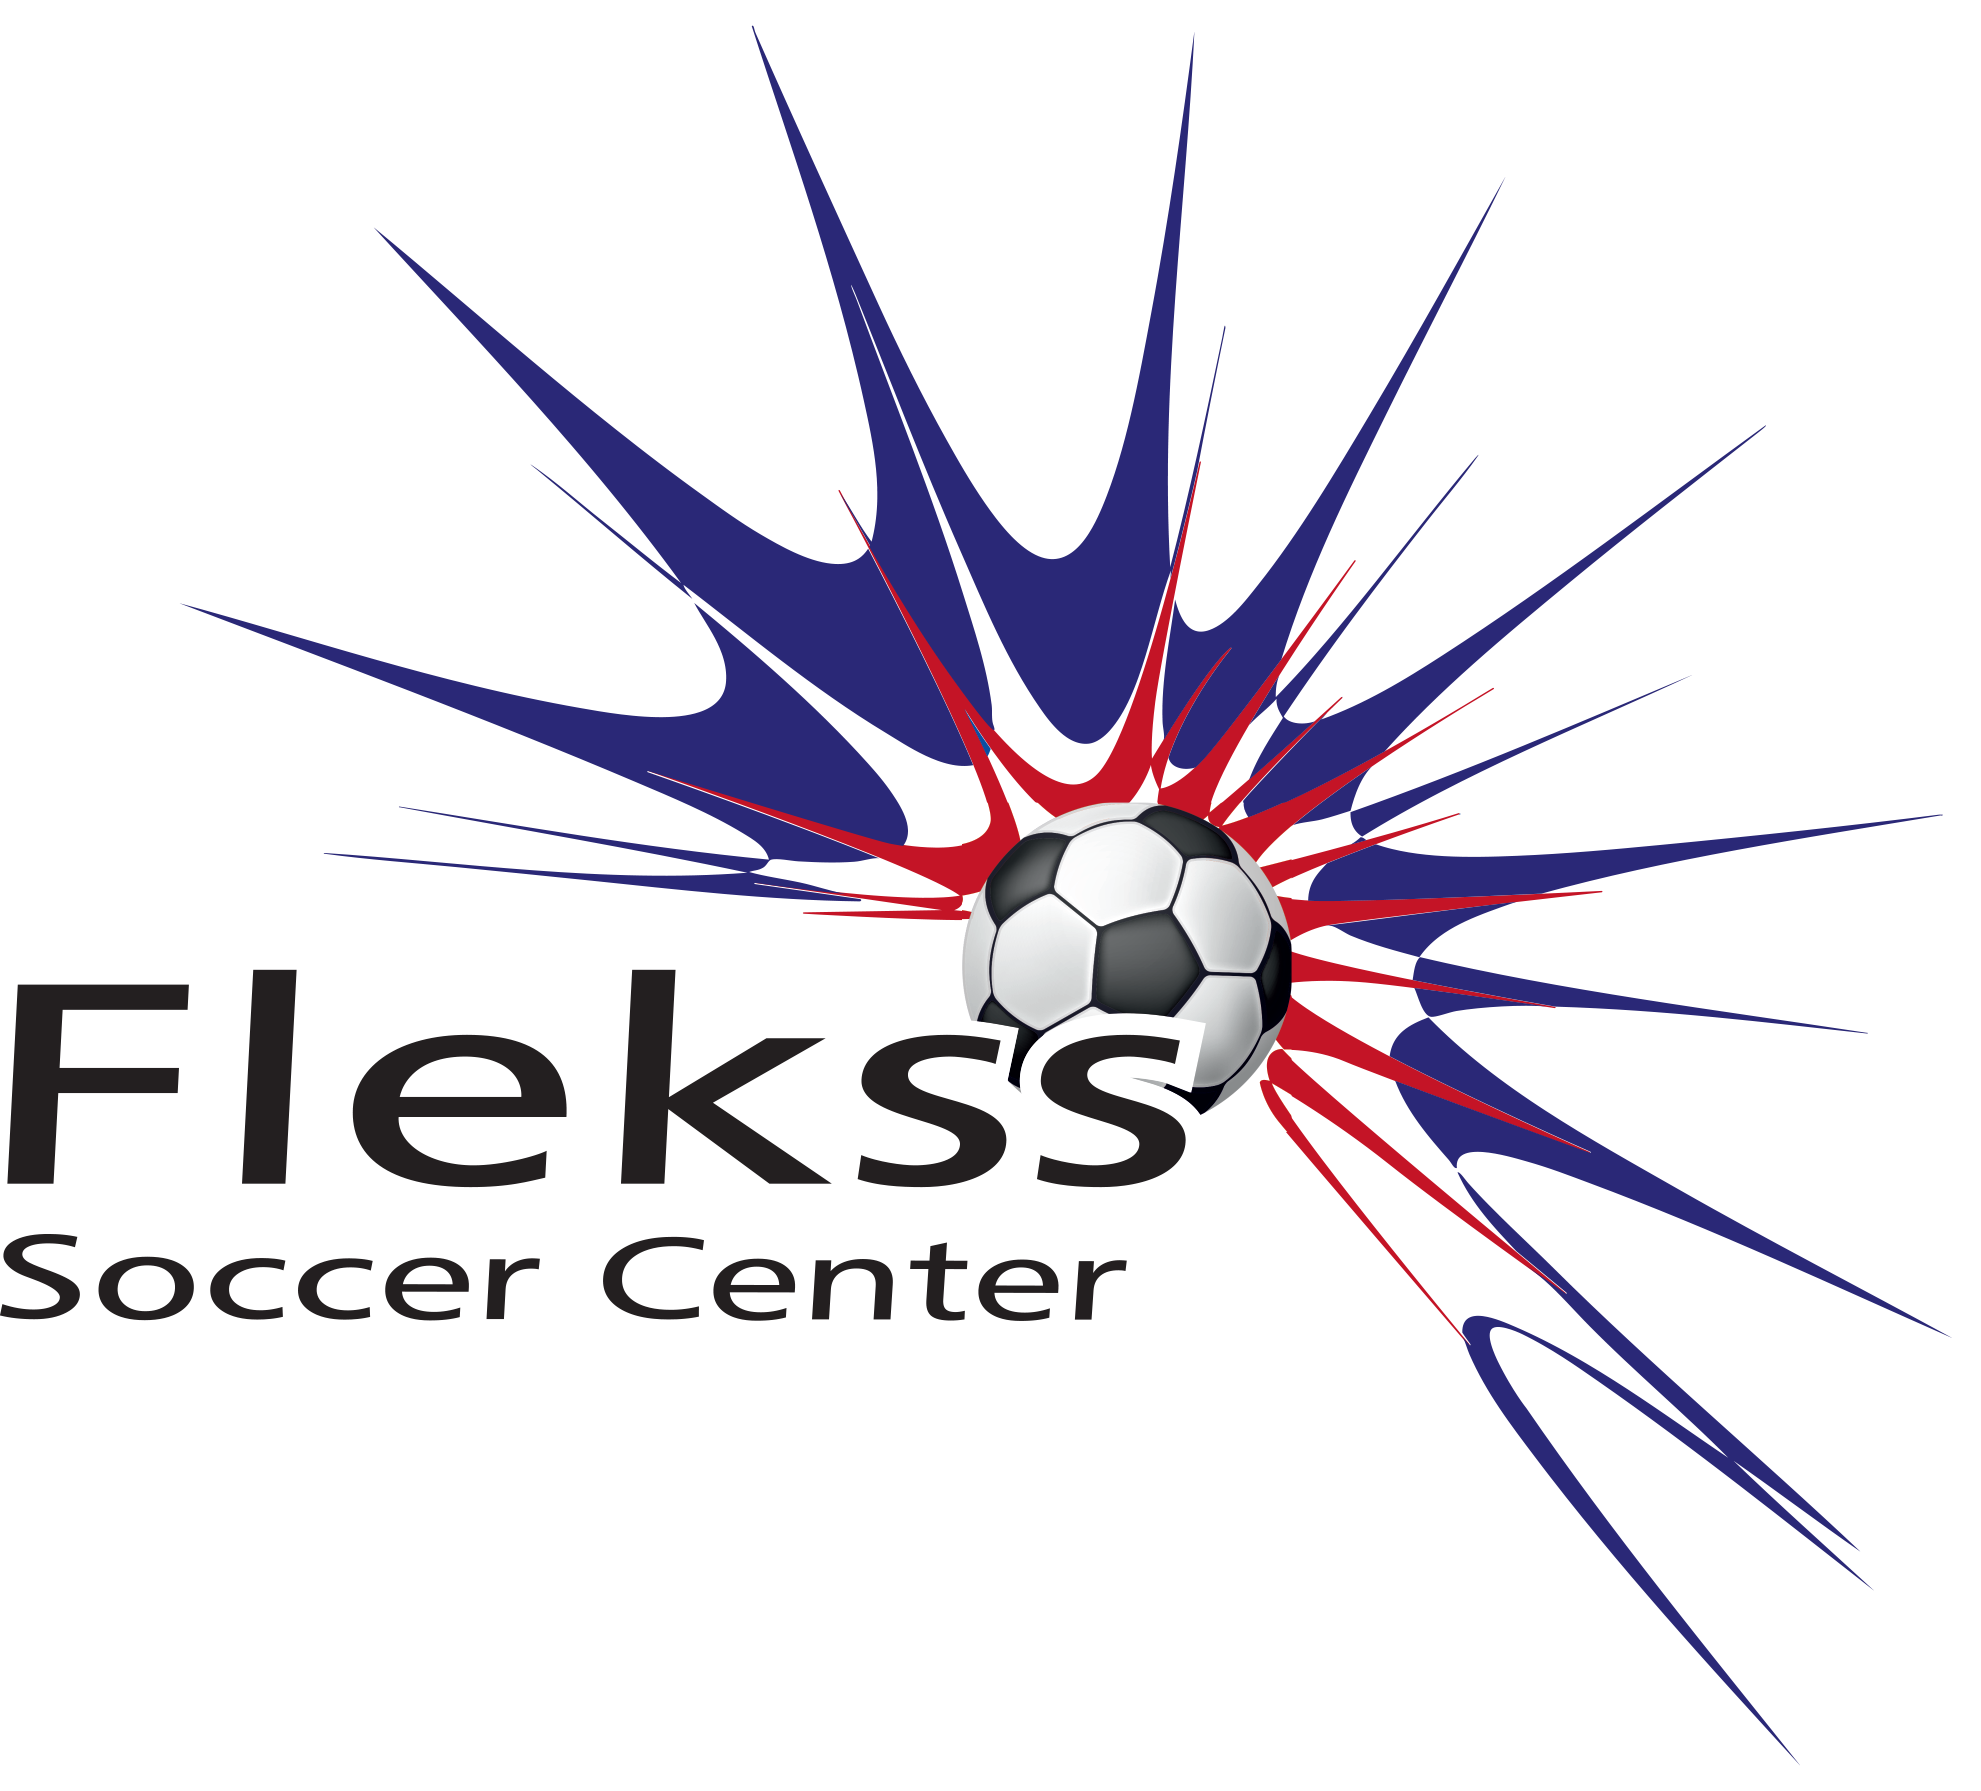 Flekss Soccer Center Logo